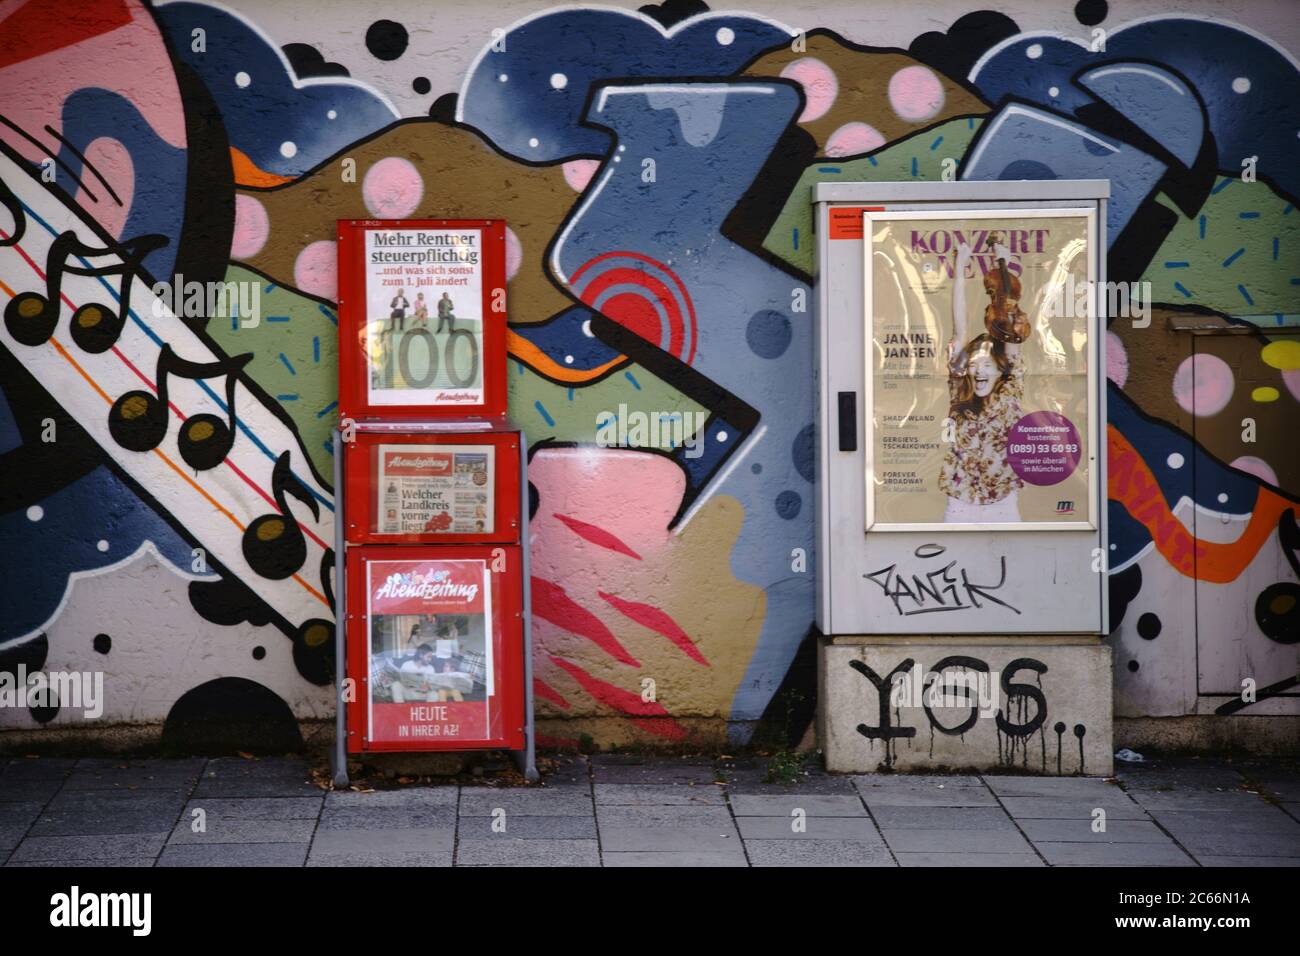 Ein Zeitungsstand der Abendzeitung und eine elektrische Verteilbox mit Veranstaltungsplakat vor einer bunten Graffiti-Wand in München, Stockfoto